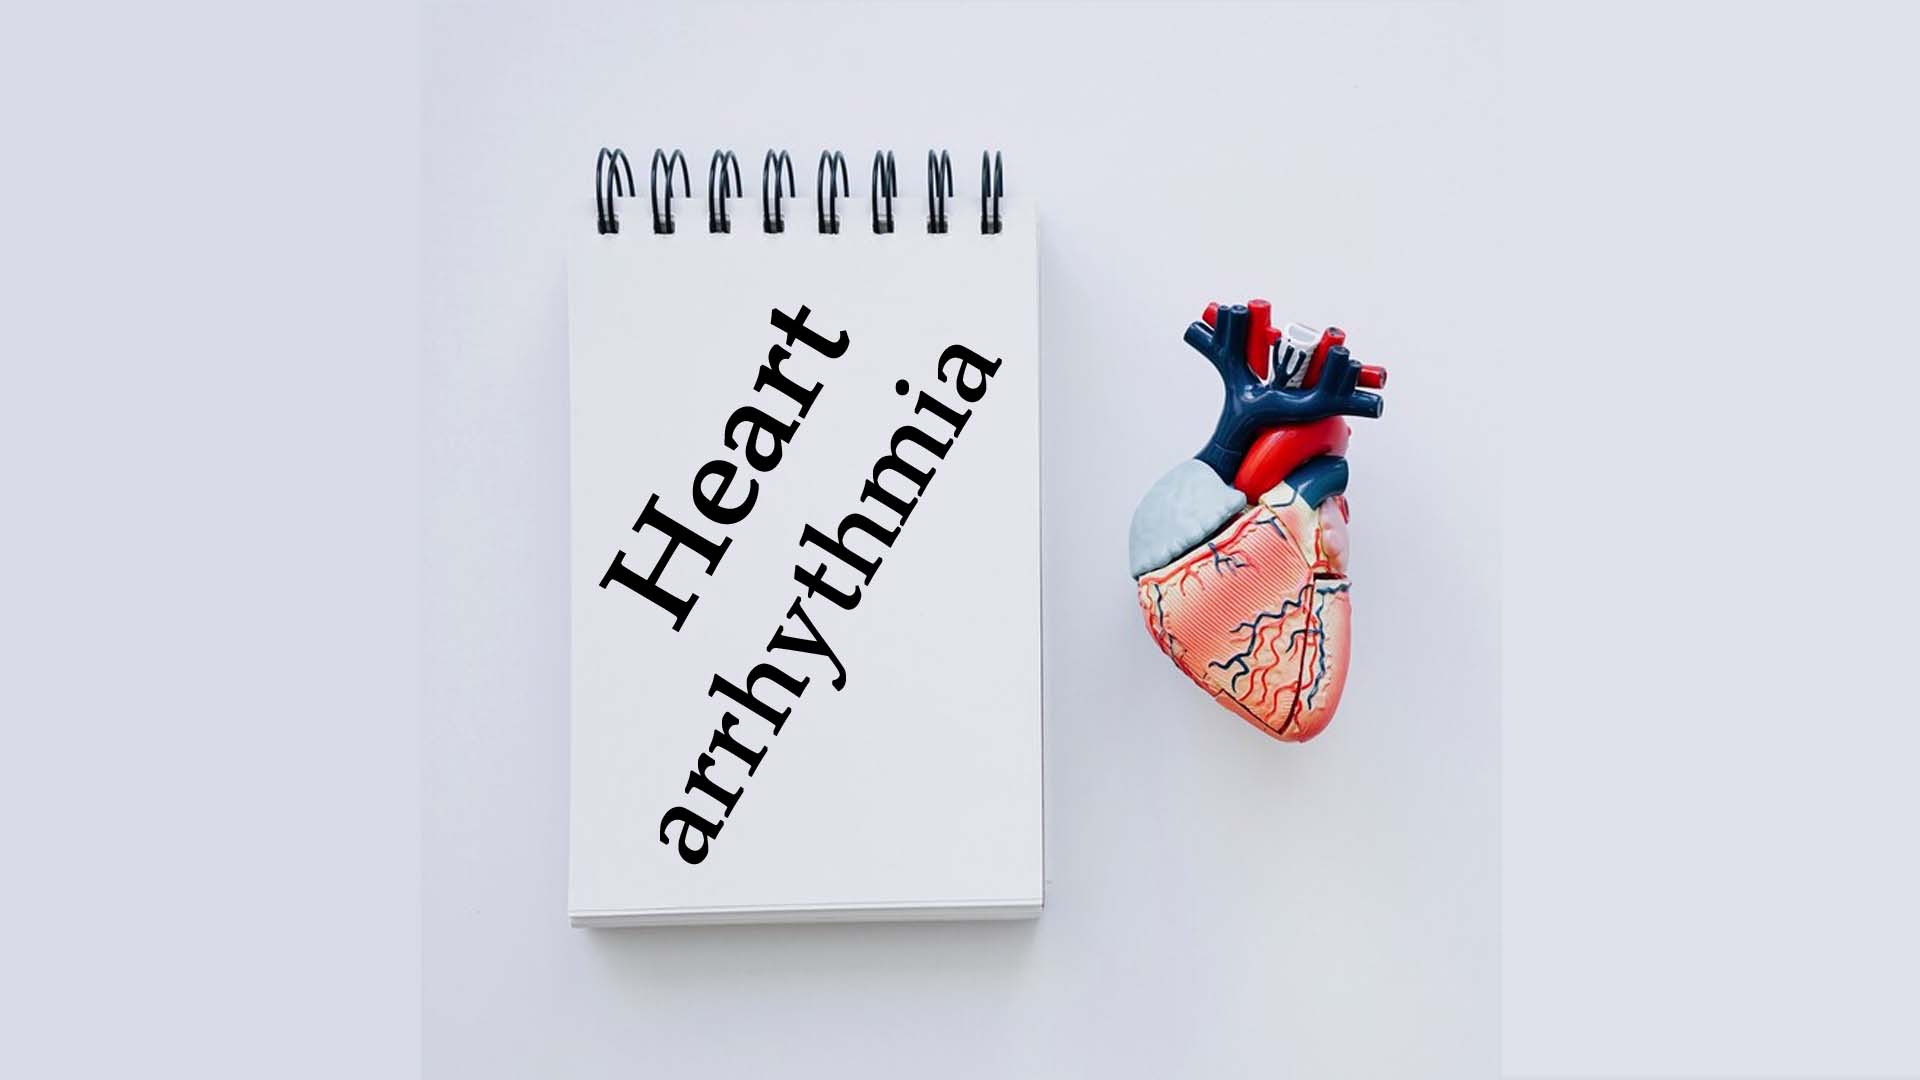 Heart arrhythmia